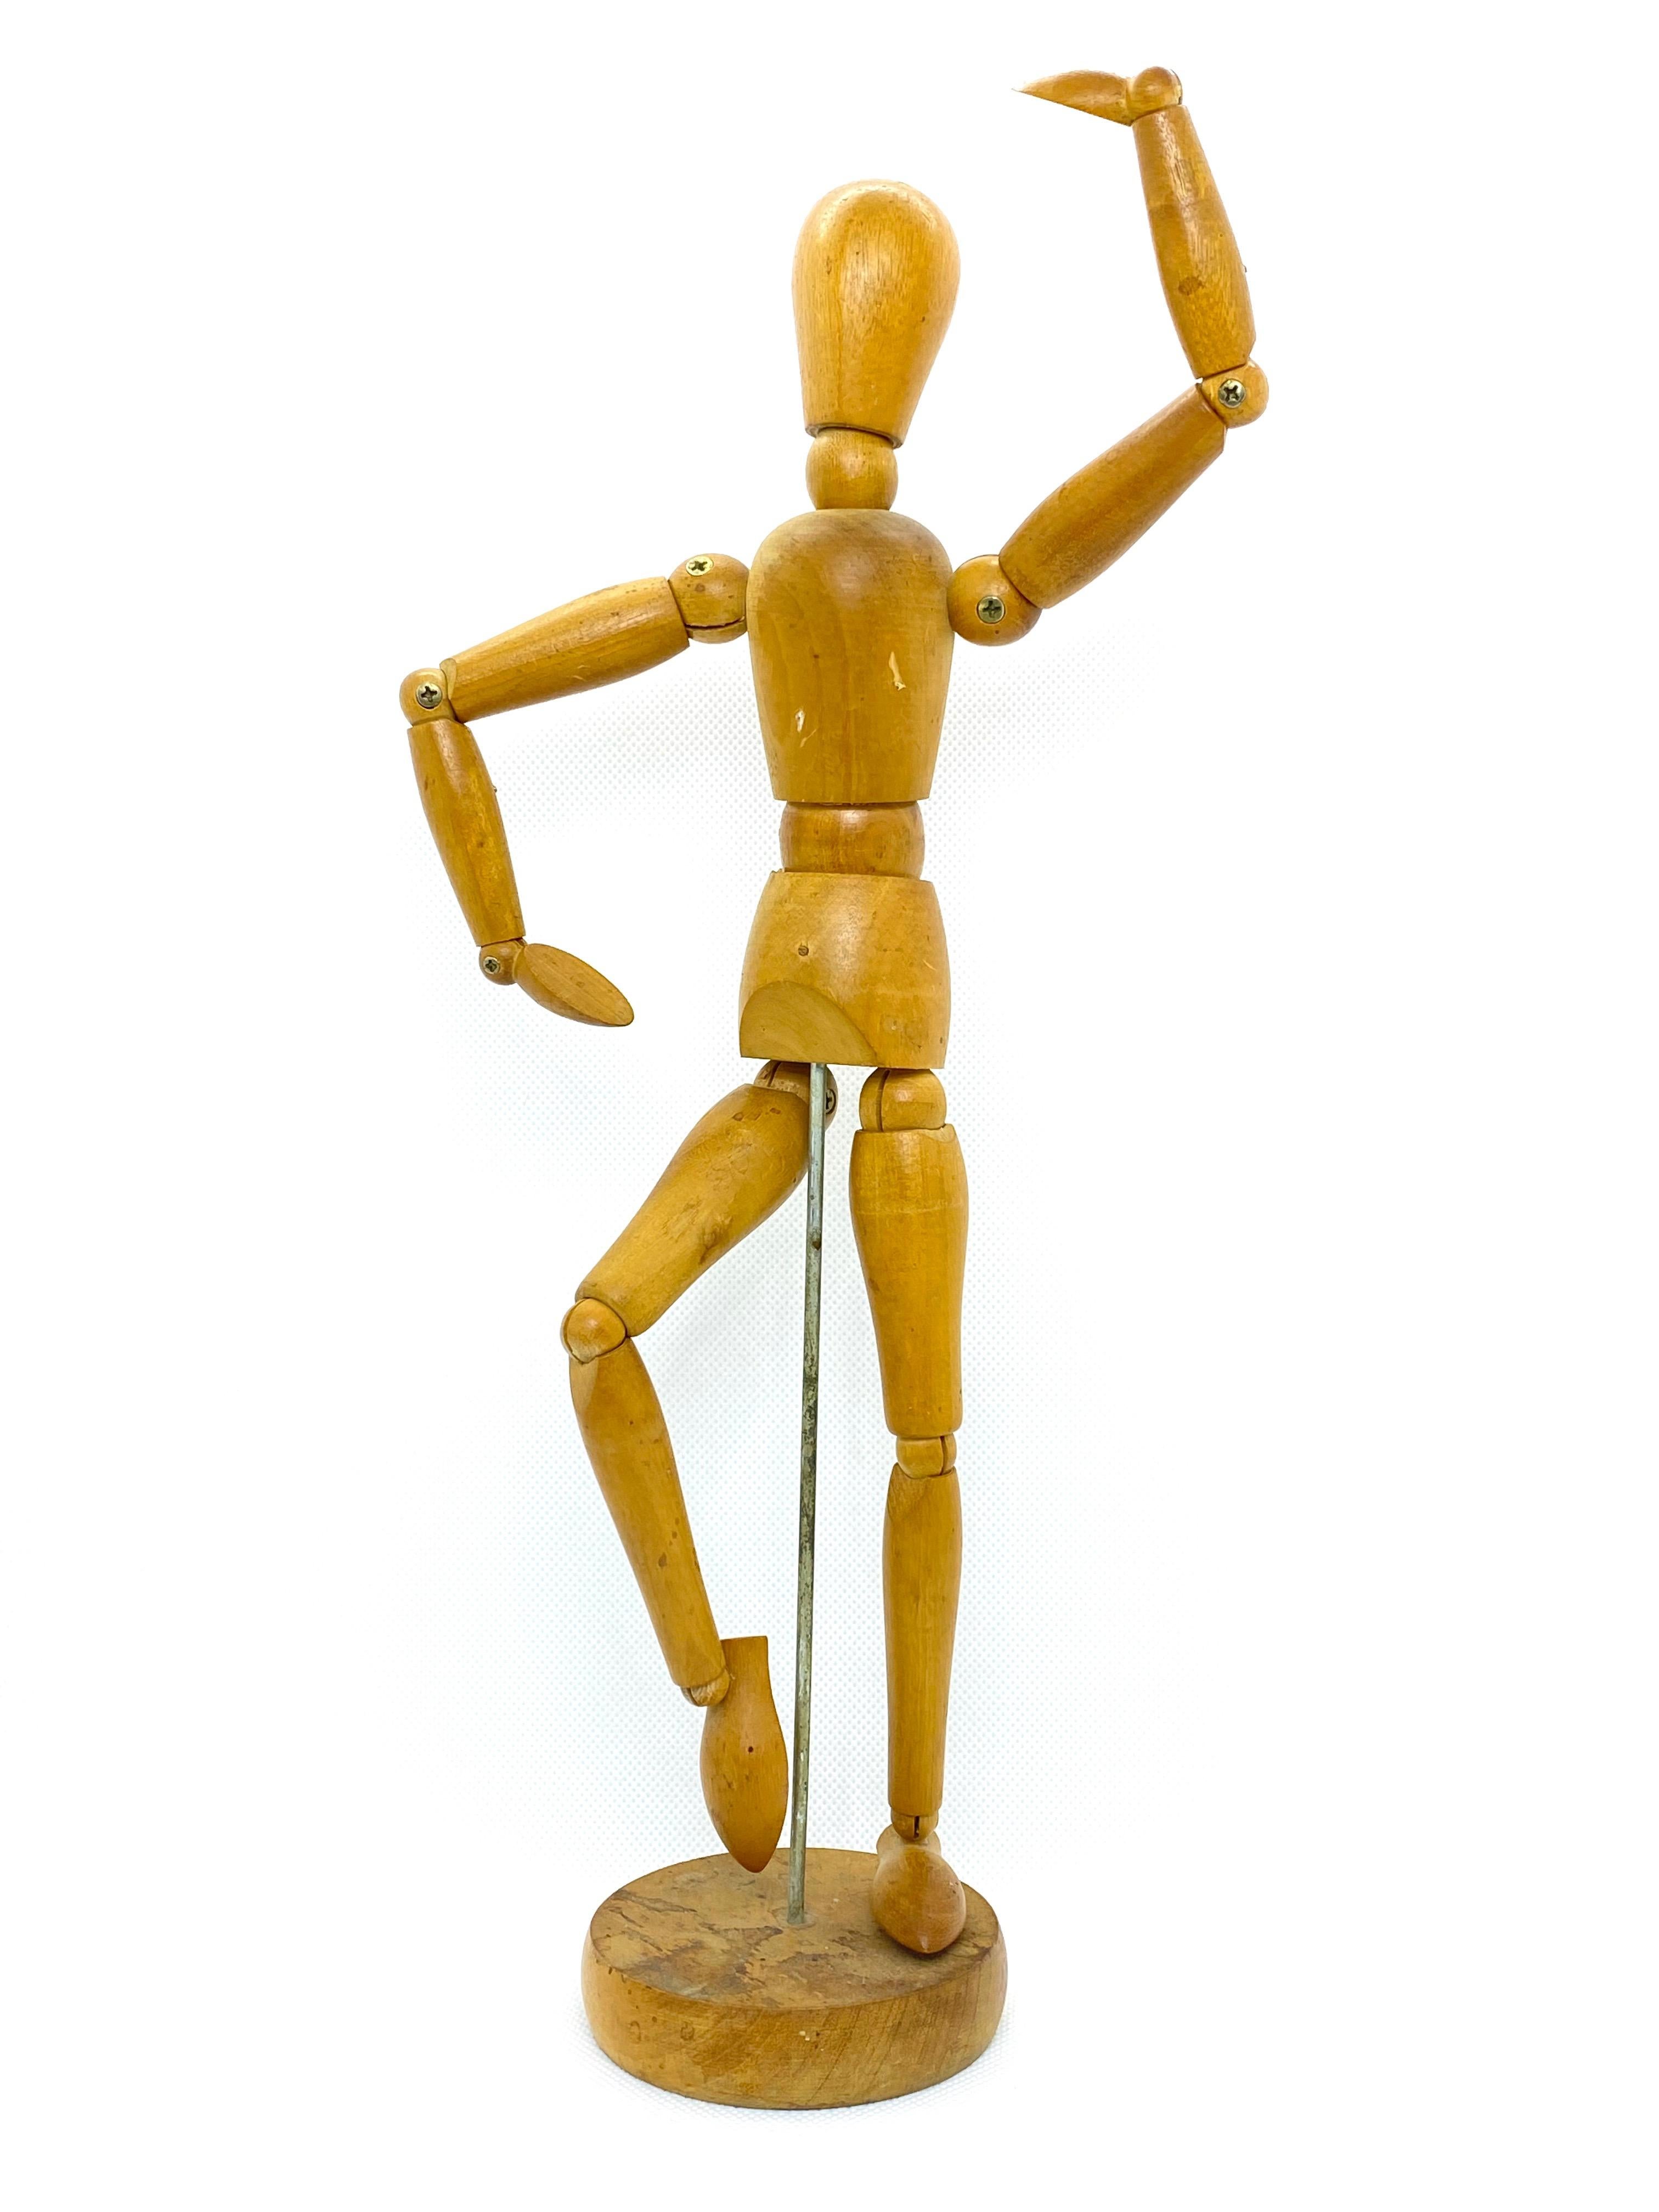 Mannequin figure, Art materials, Tate Shop